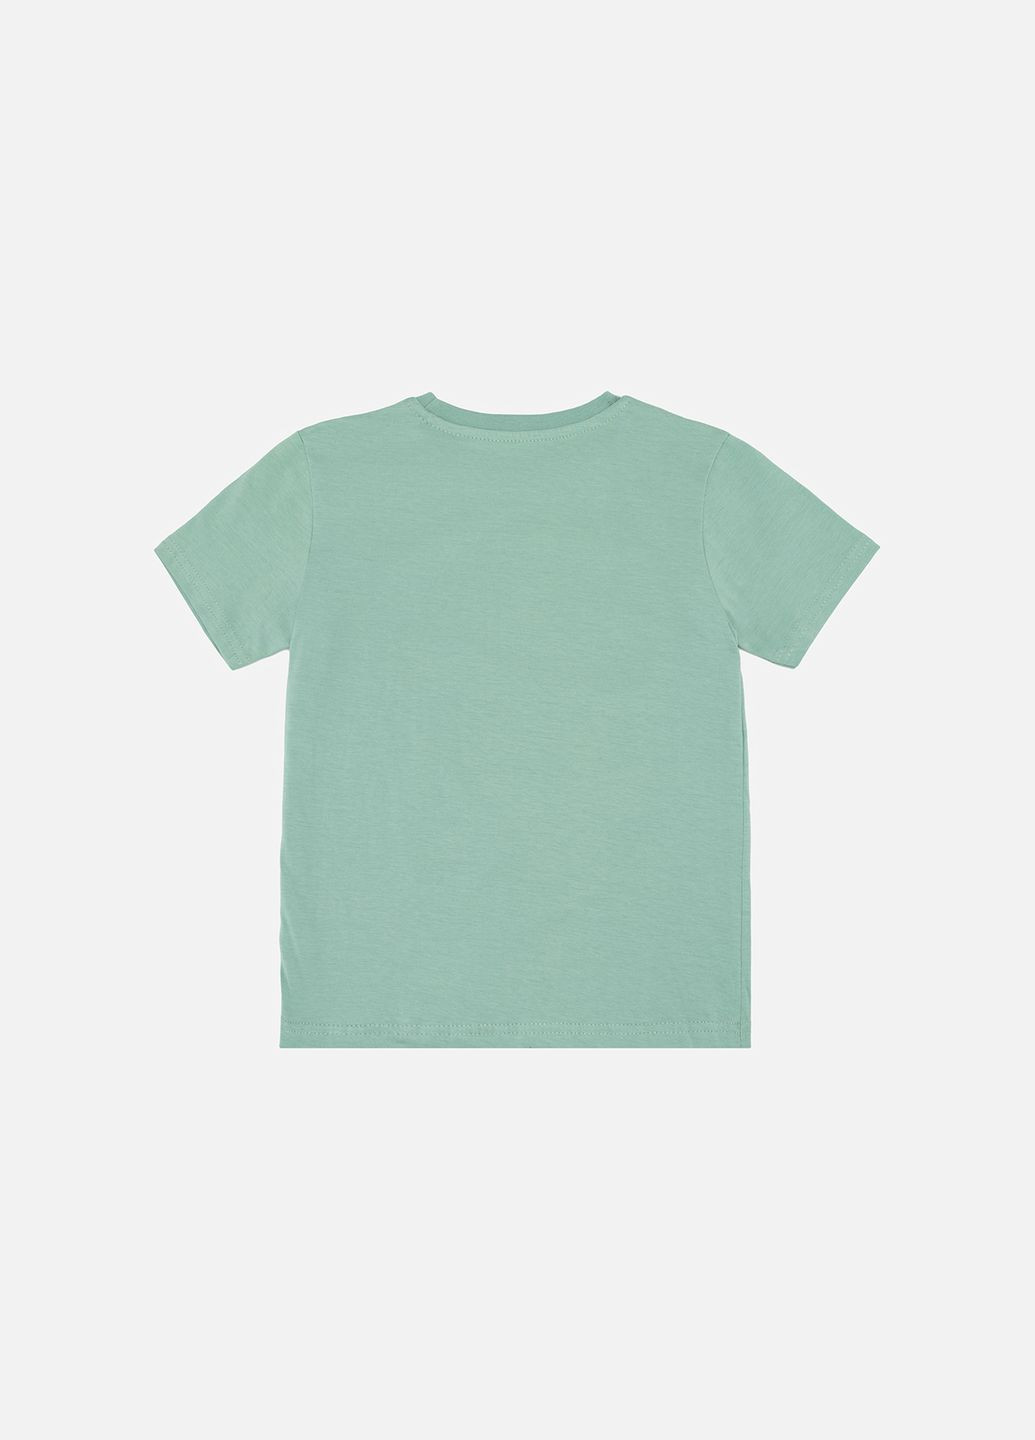 Оливковая летняя футболка с коротким рукавом для мальчика цвет оливковый цб-00246161 No Brand